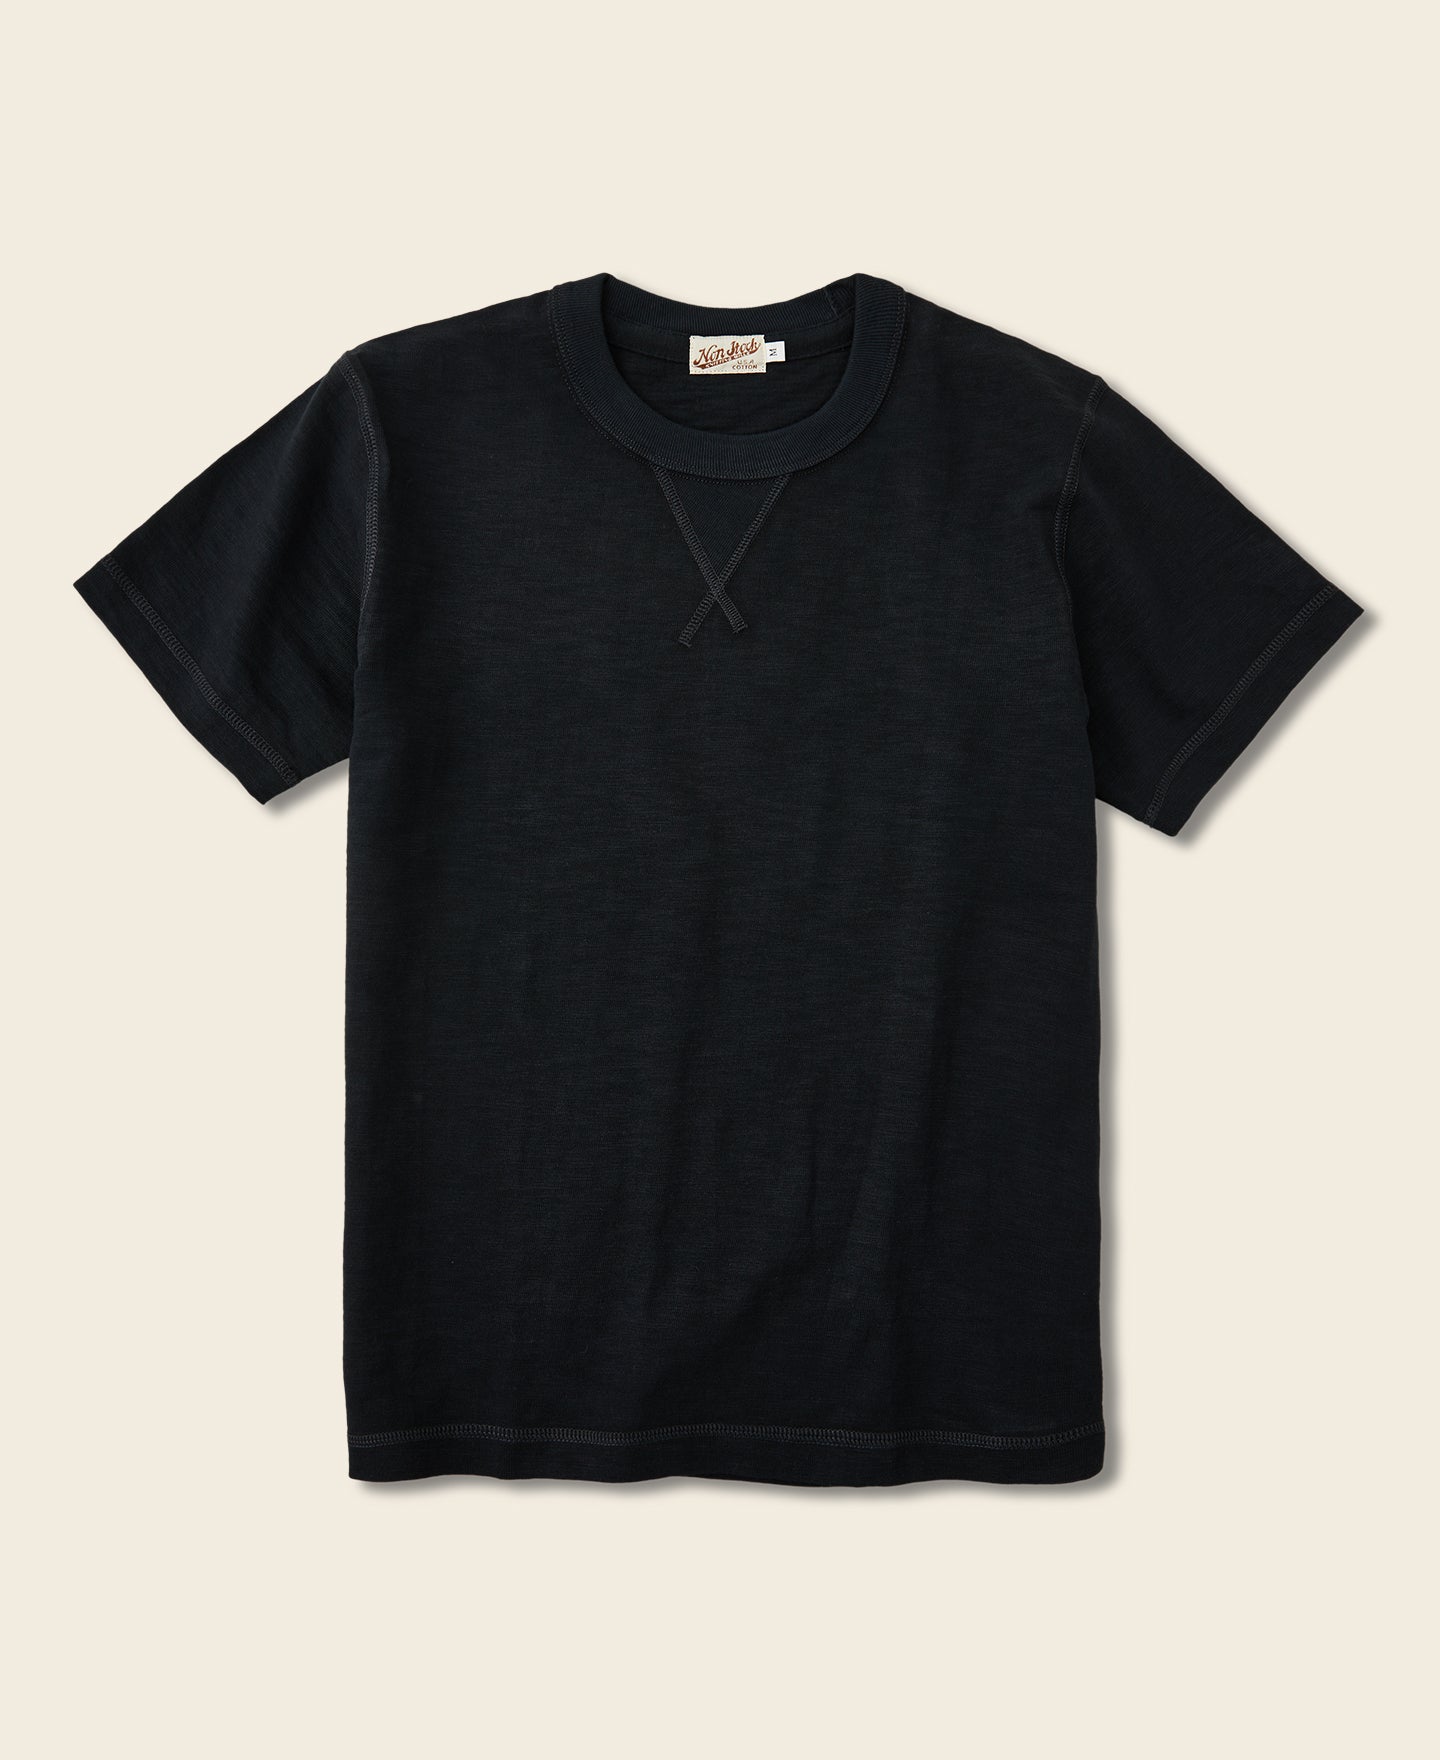 10.5 oz US Cotton Ring-spun V-Shaped Tubular Gusset T-Shirt - Black